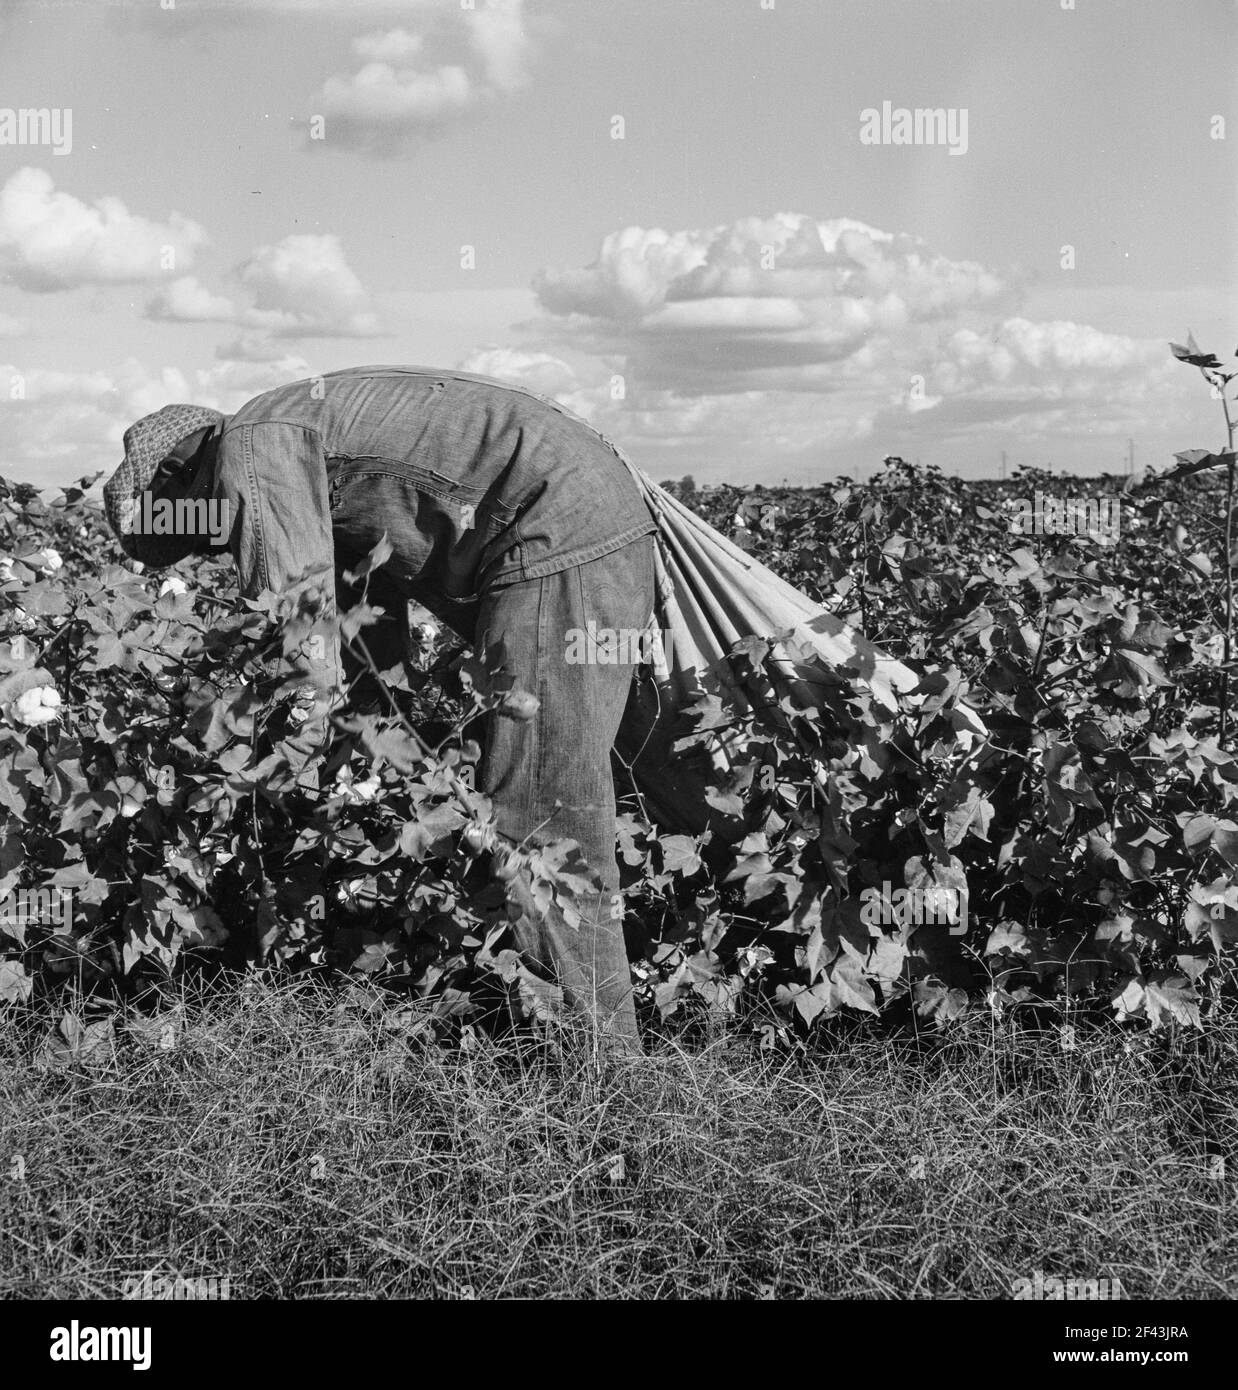 Wanderarbeiter beim Baumwollpflücken im San Joaquin Valley, Kalifornien. Diese Baumwollpflücker werden fünfundsiebzig Cent pro hundert Pfund bezahlt. Streikende, die sich unter dem Kongress der Gewerkschaft der Industrieorganisationen (CIO) organisieren, fordern einen Dollar. Ein guter männlicher Pflücker, in guter Baumwolle, unter günstigen Wetterbedingungen, kann ungefähr zweihundert Pfund in einer täglichen Arbeit pflücken. November 1938. Foto von Dorothea lange. Stockfoto